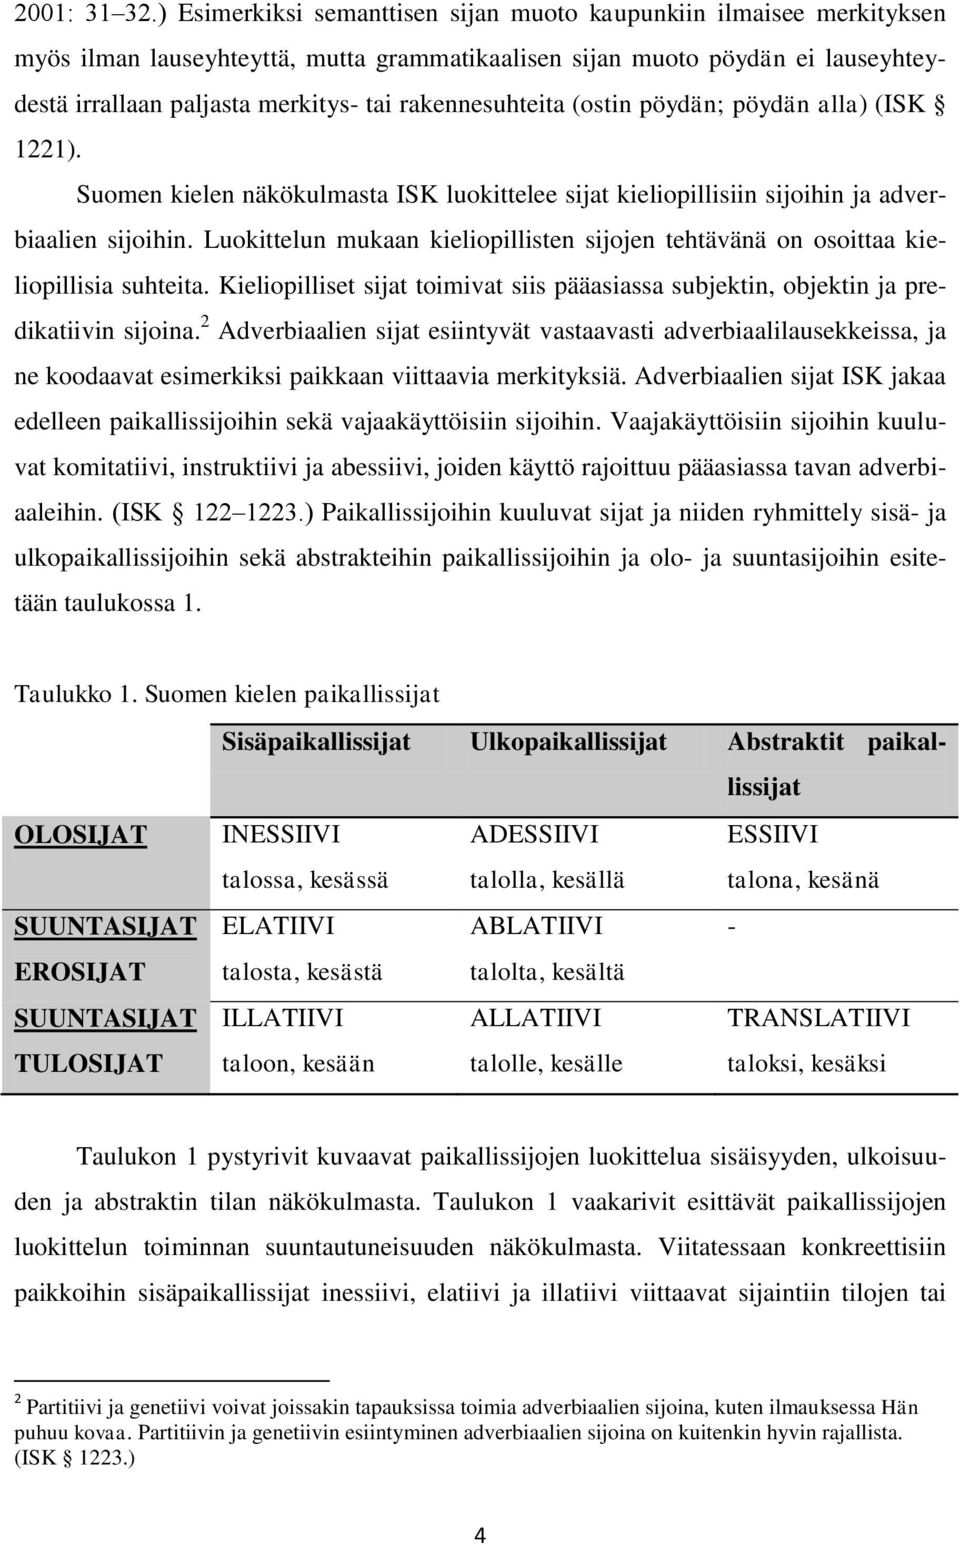 rakennesuhteita (ostin pöydän; pöydän alla) (ISK 1221). Suomen kielen näkökulmasta ISK luokittelee sijat kieliopillisiin sijoihin ja adverbiaalien sijoihin.